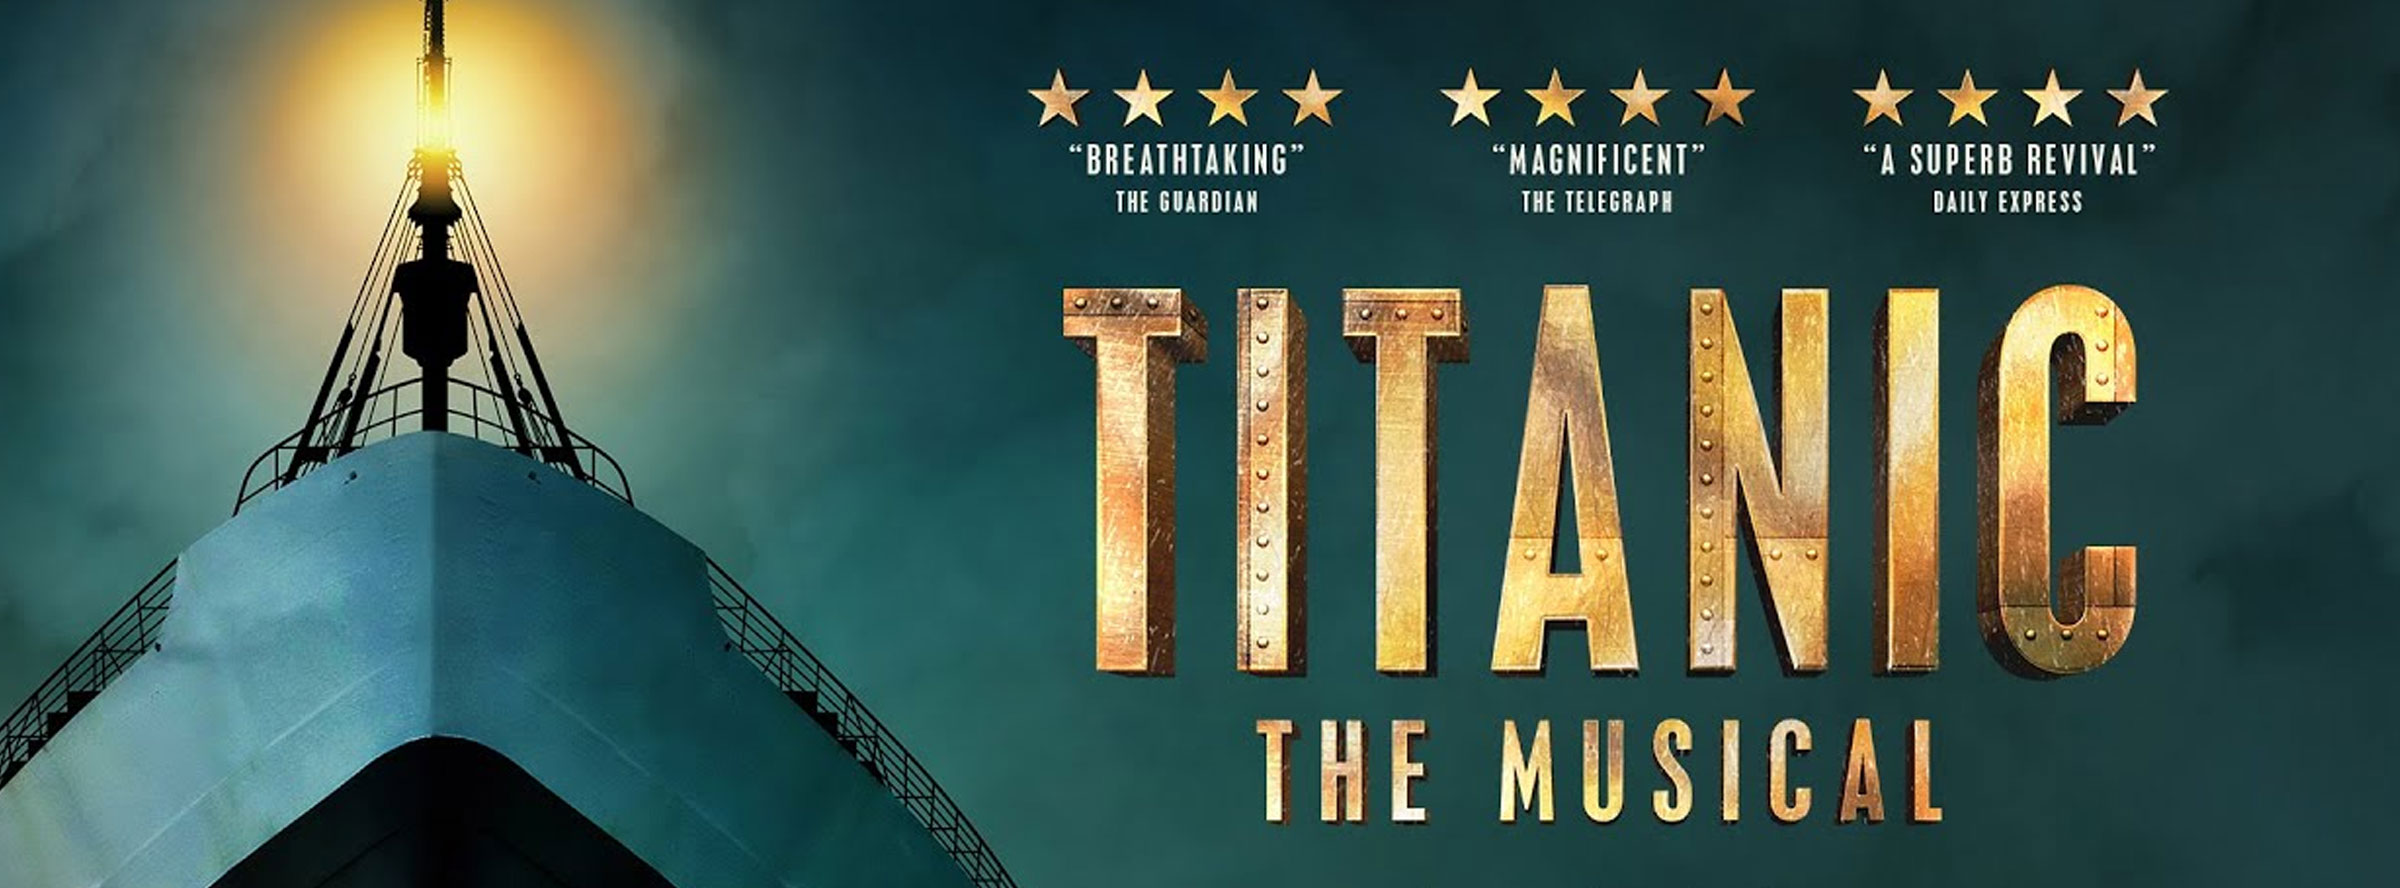 Slider Image for Titanic: The Musical                                                       